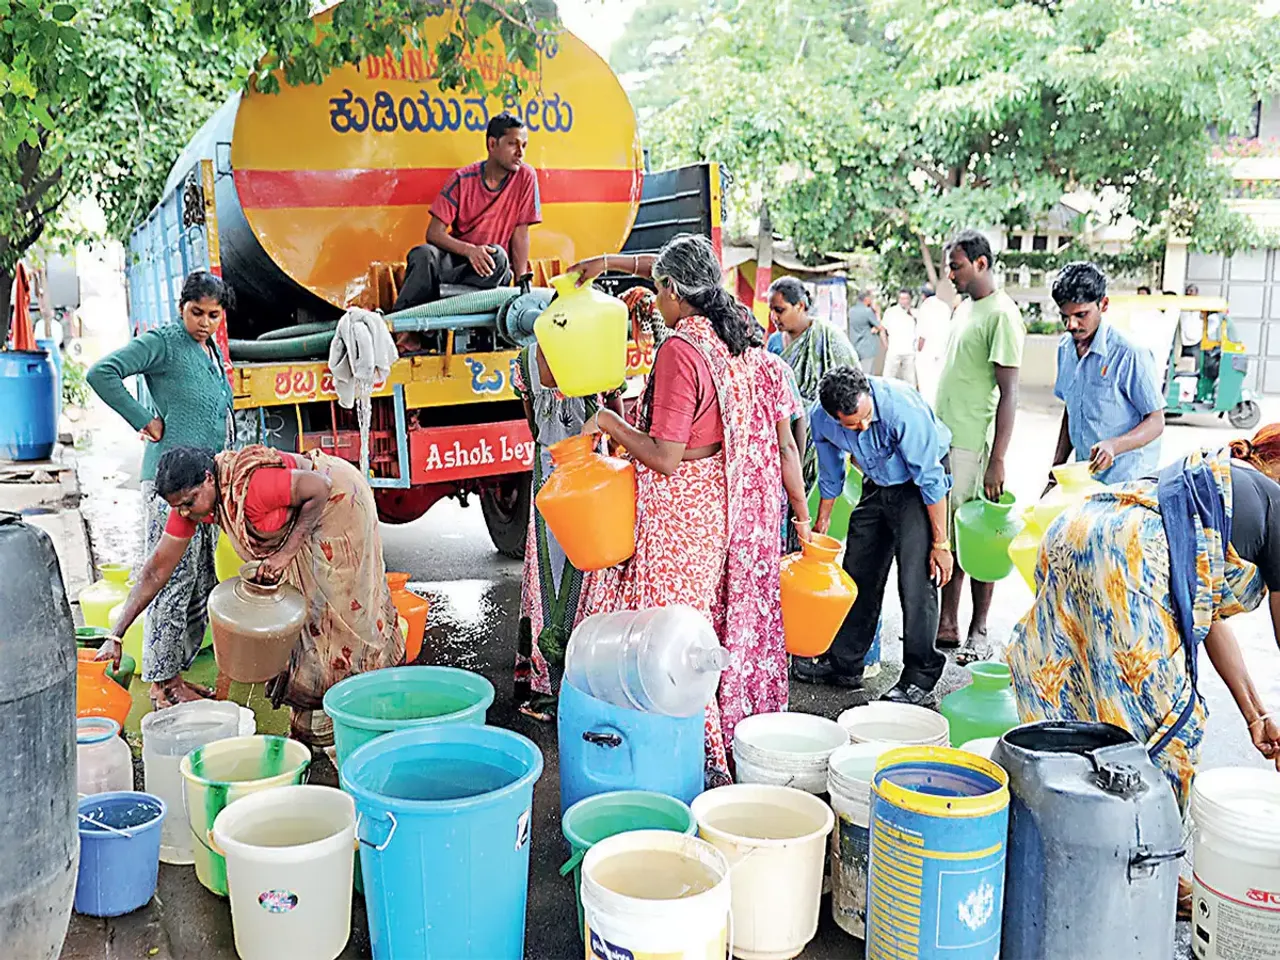 "3-4 दशकों में ऐसा सूखा नहीं देखा": बेंगलुरु जल संकट पर डीके शिवकुमार